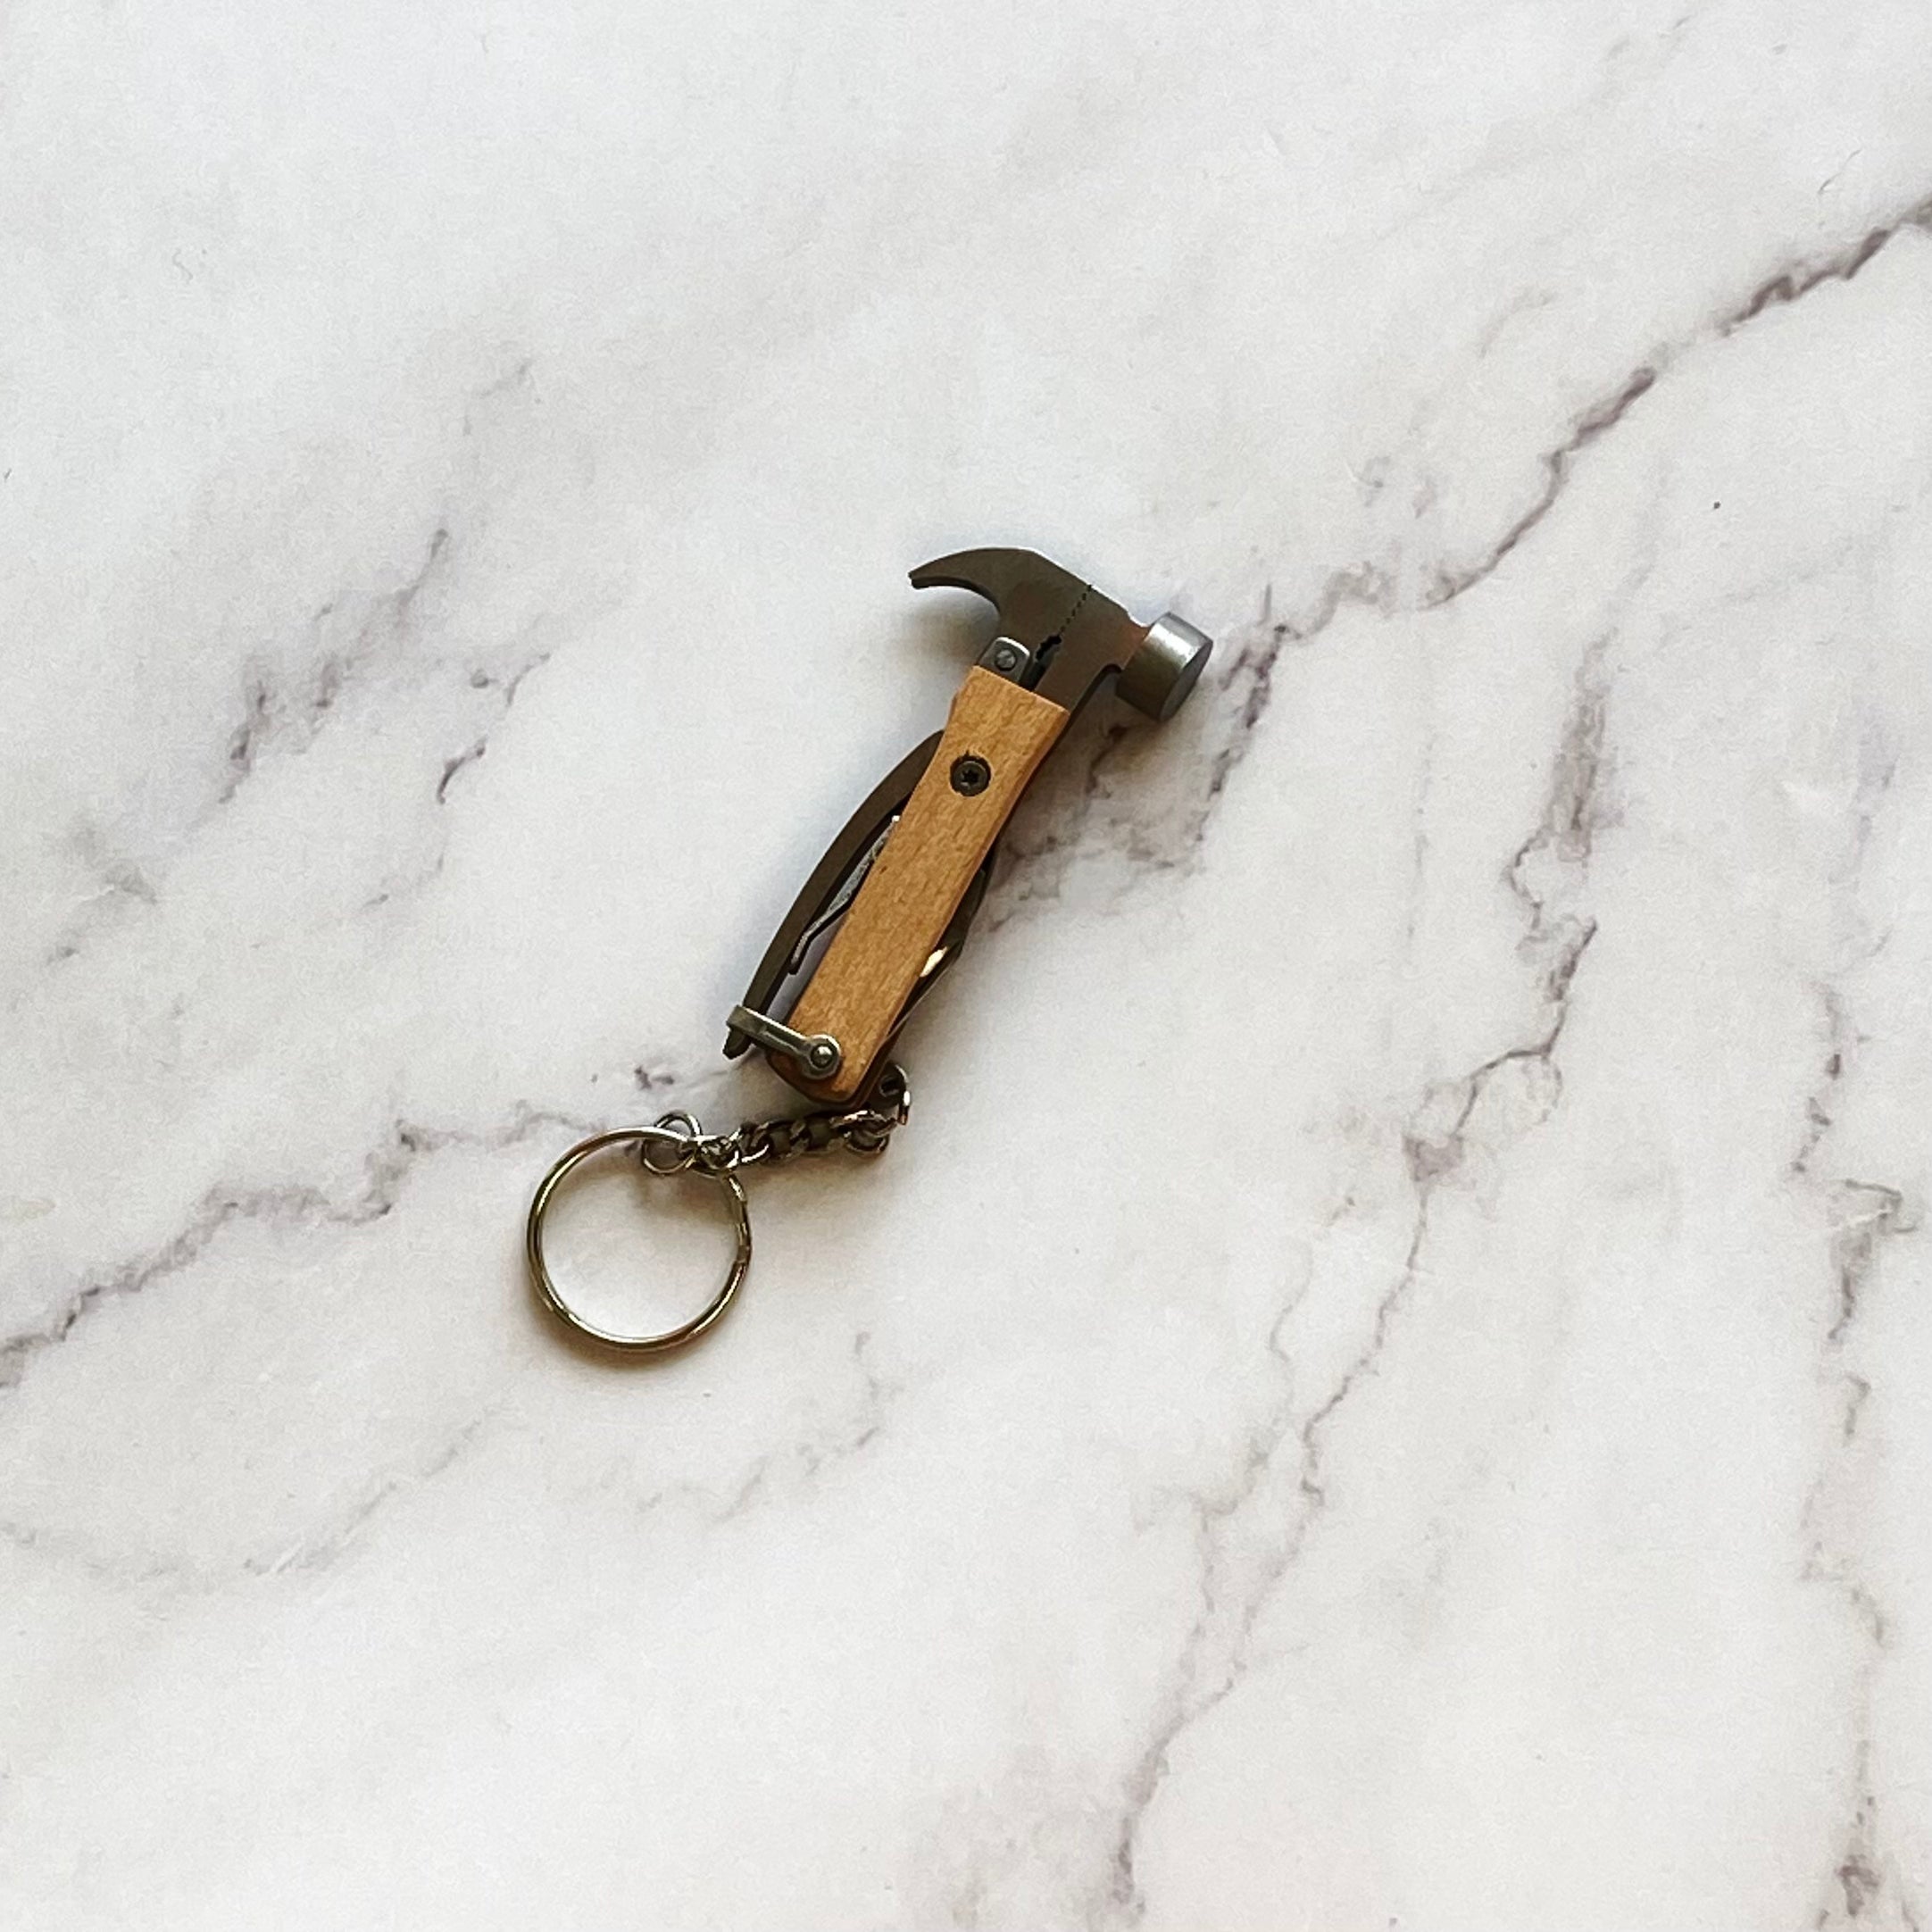 Mini Hammer Multitool Keychain